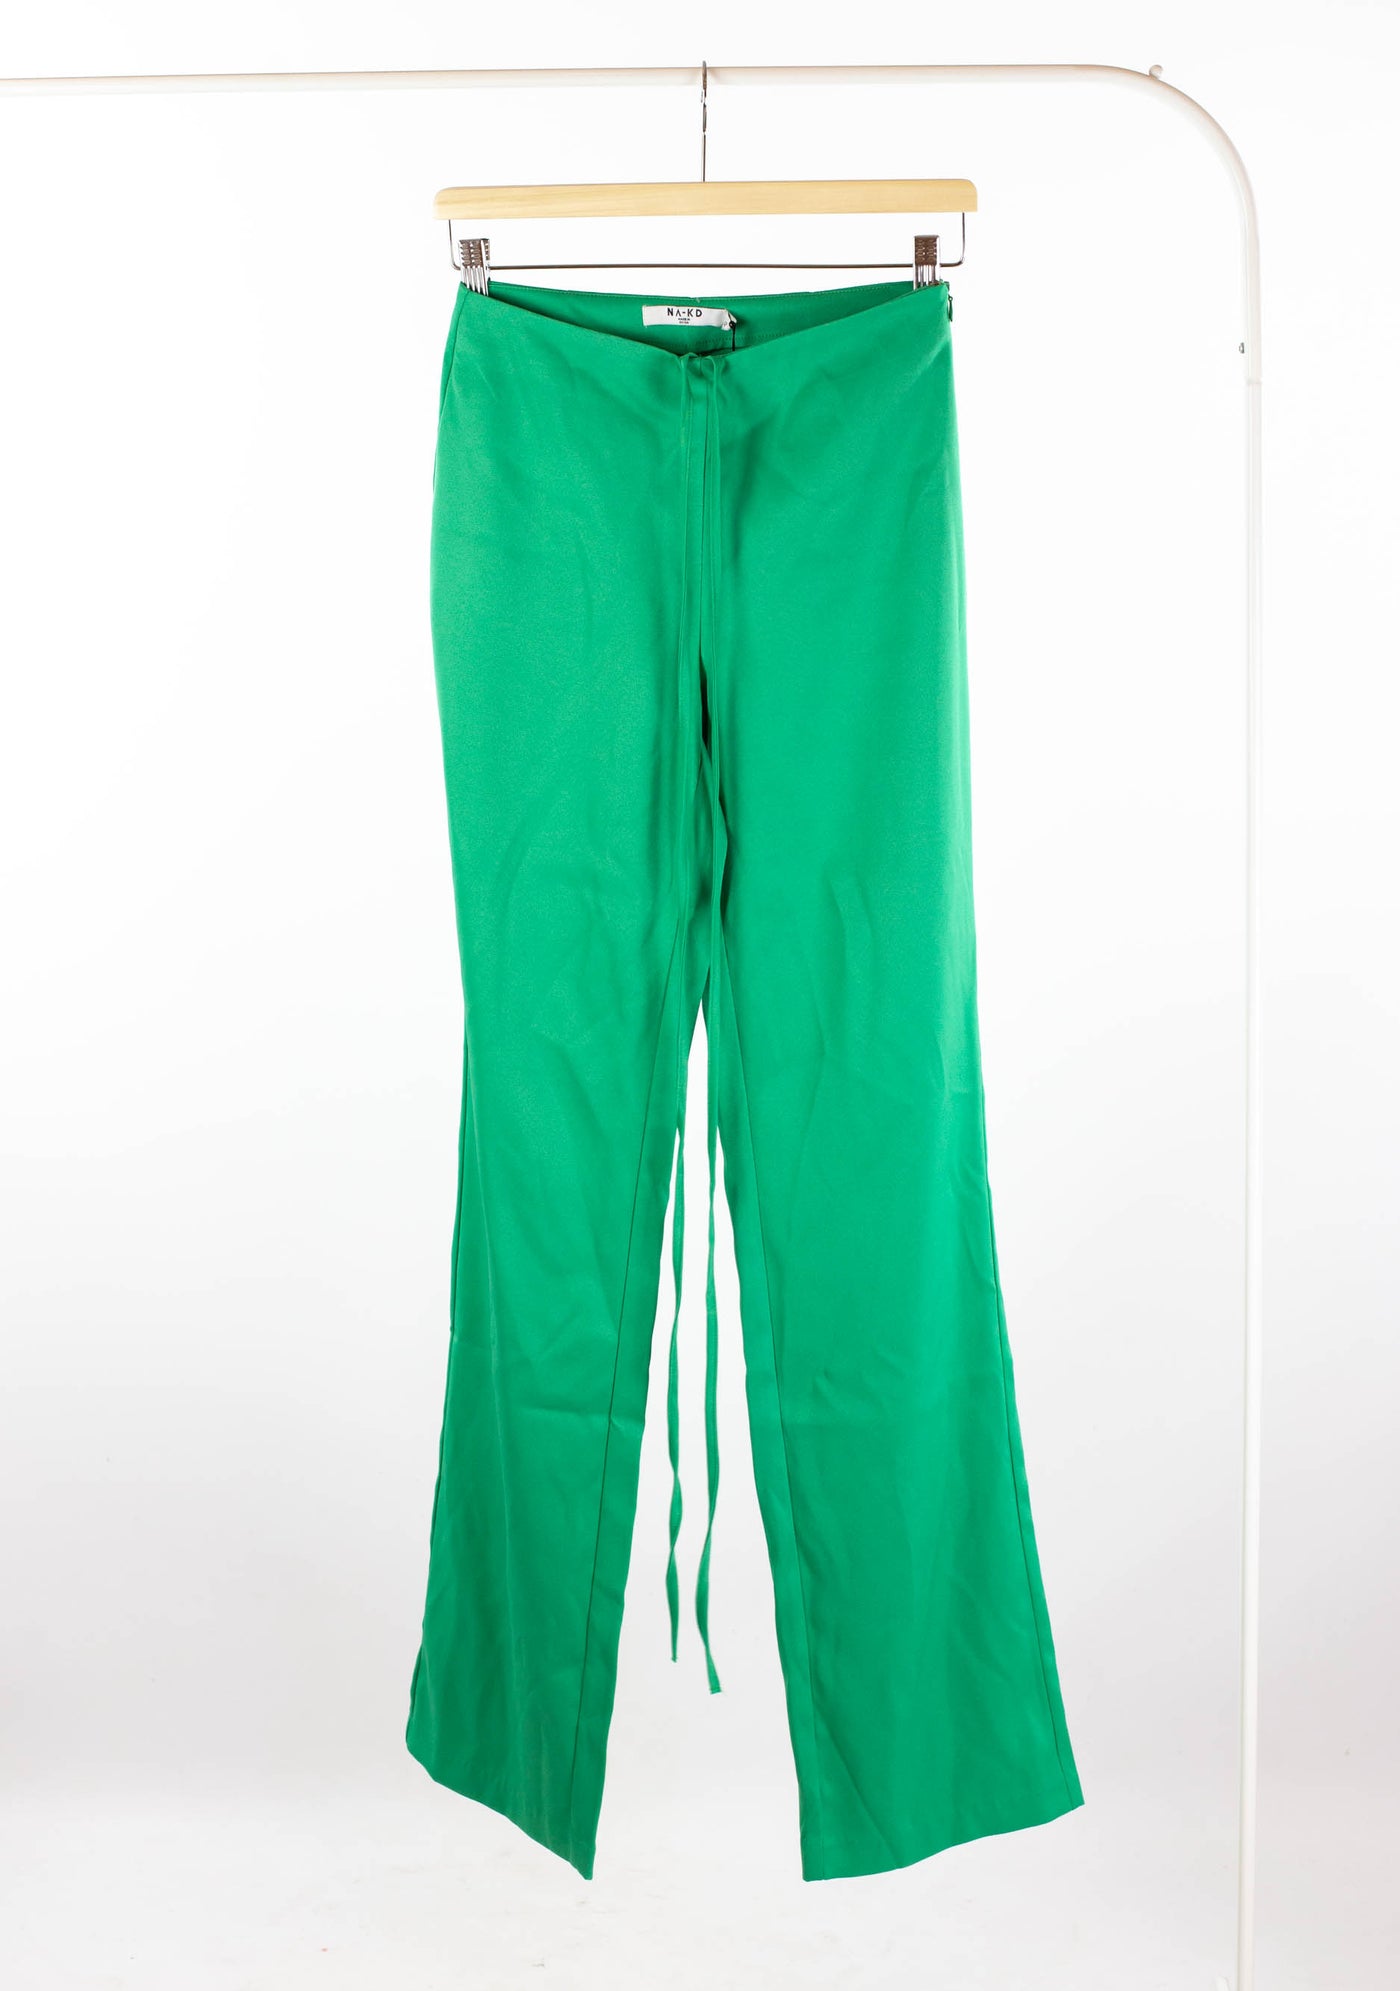 Pantalón verde de vestir NUEVO